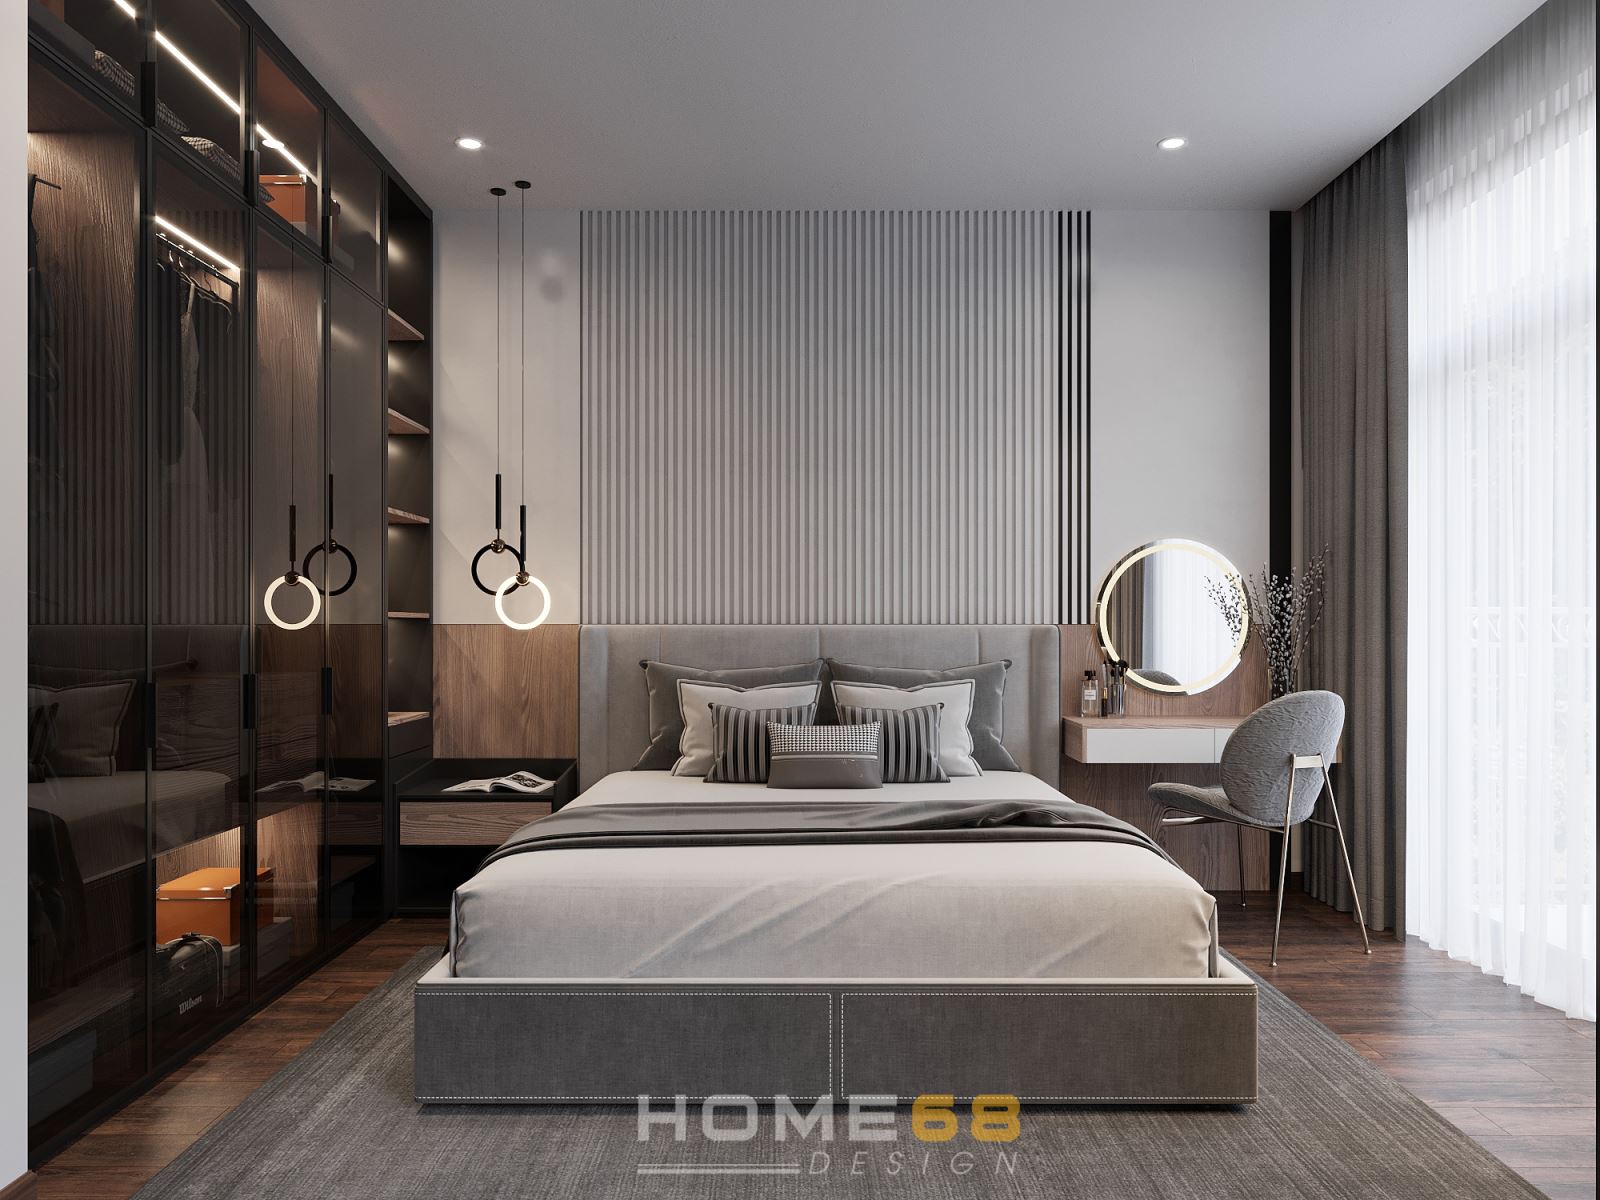 Thiết kế nội thất phòng ngủ hiện đại, độc đáo từ HOME68